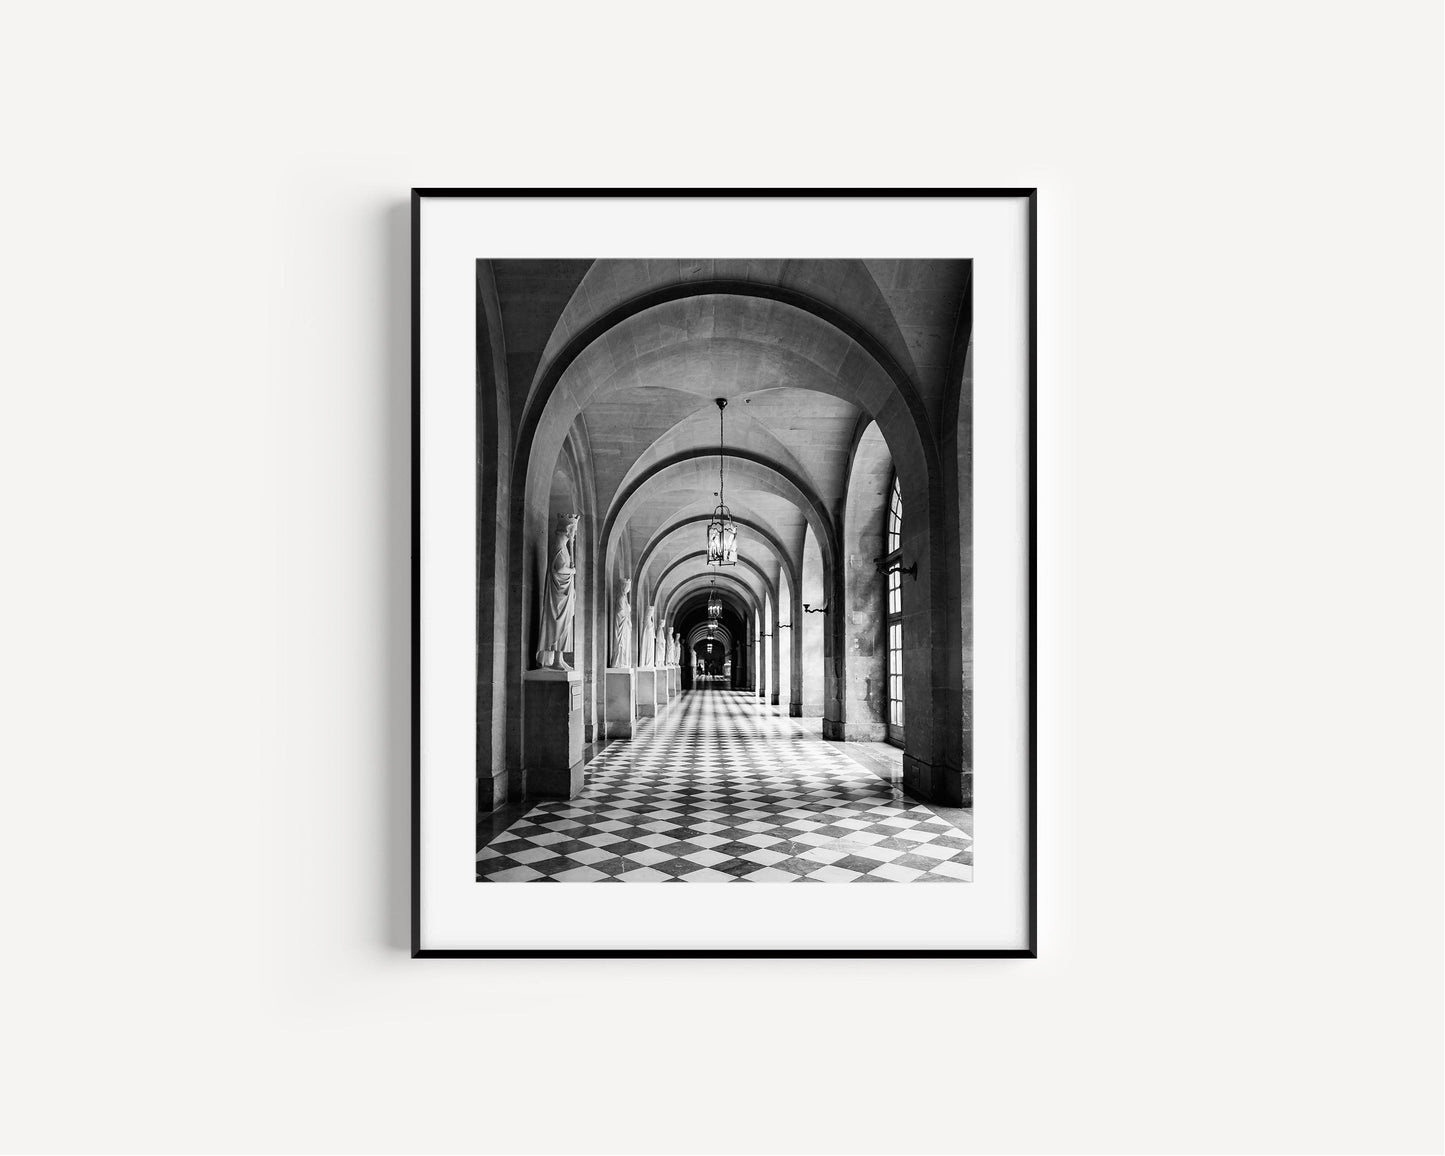 B&W Palace of Versailles Hallway | Paris France Print - Departures Print Shop